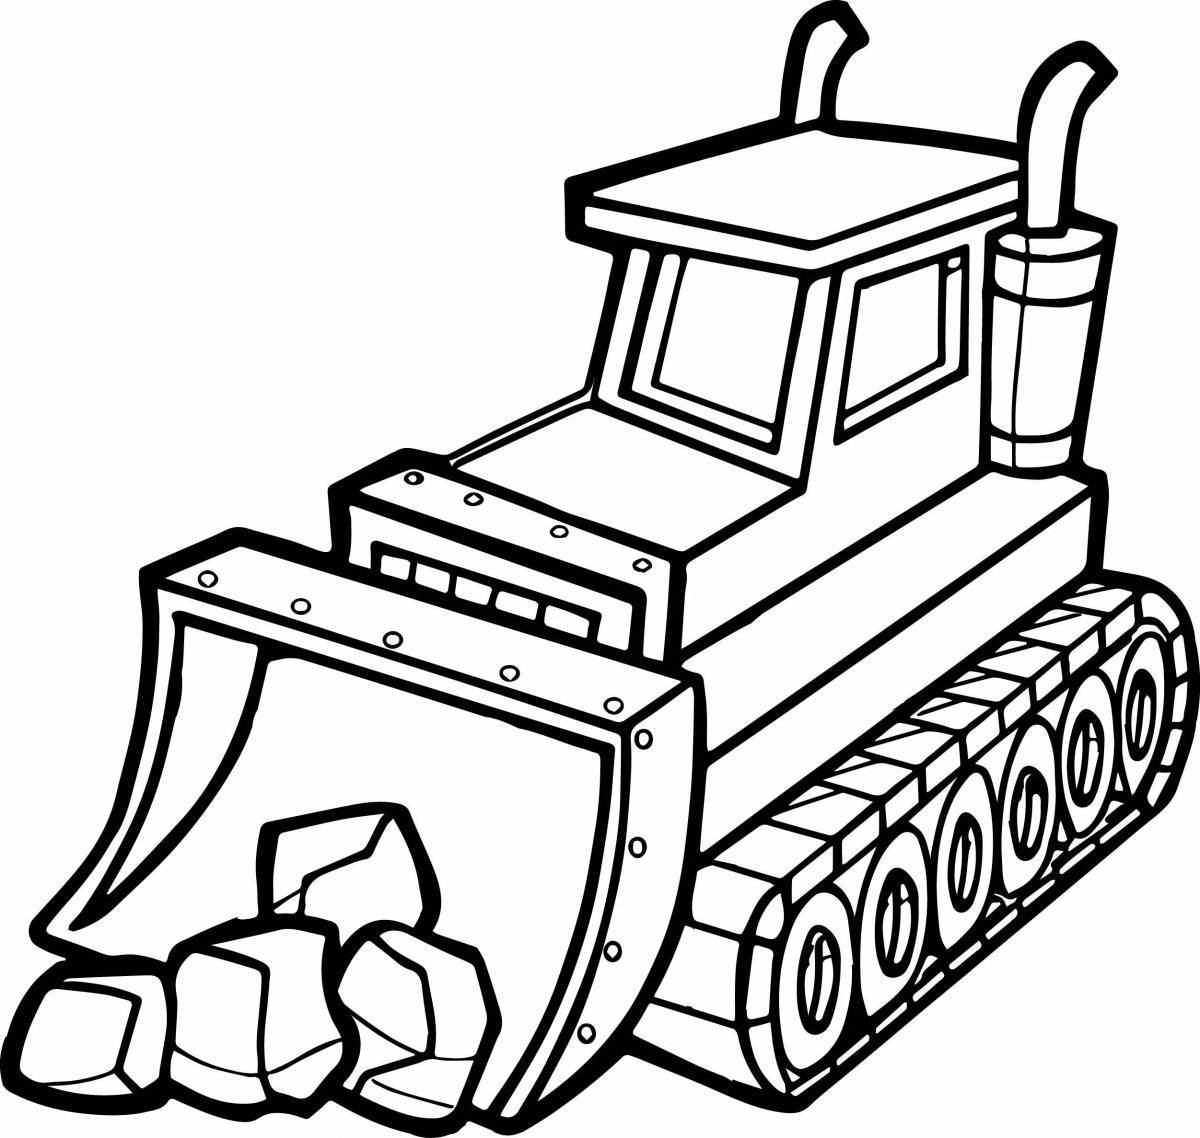 Humorous coloring book bulldozer for preschoolers